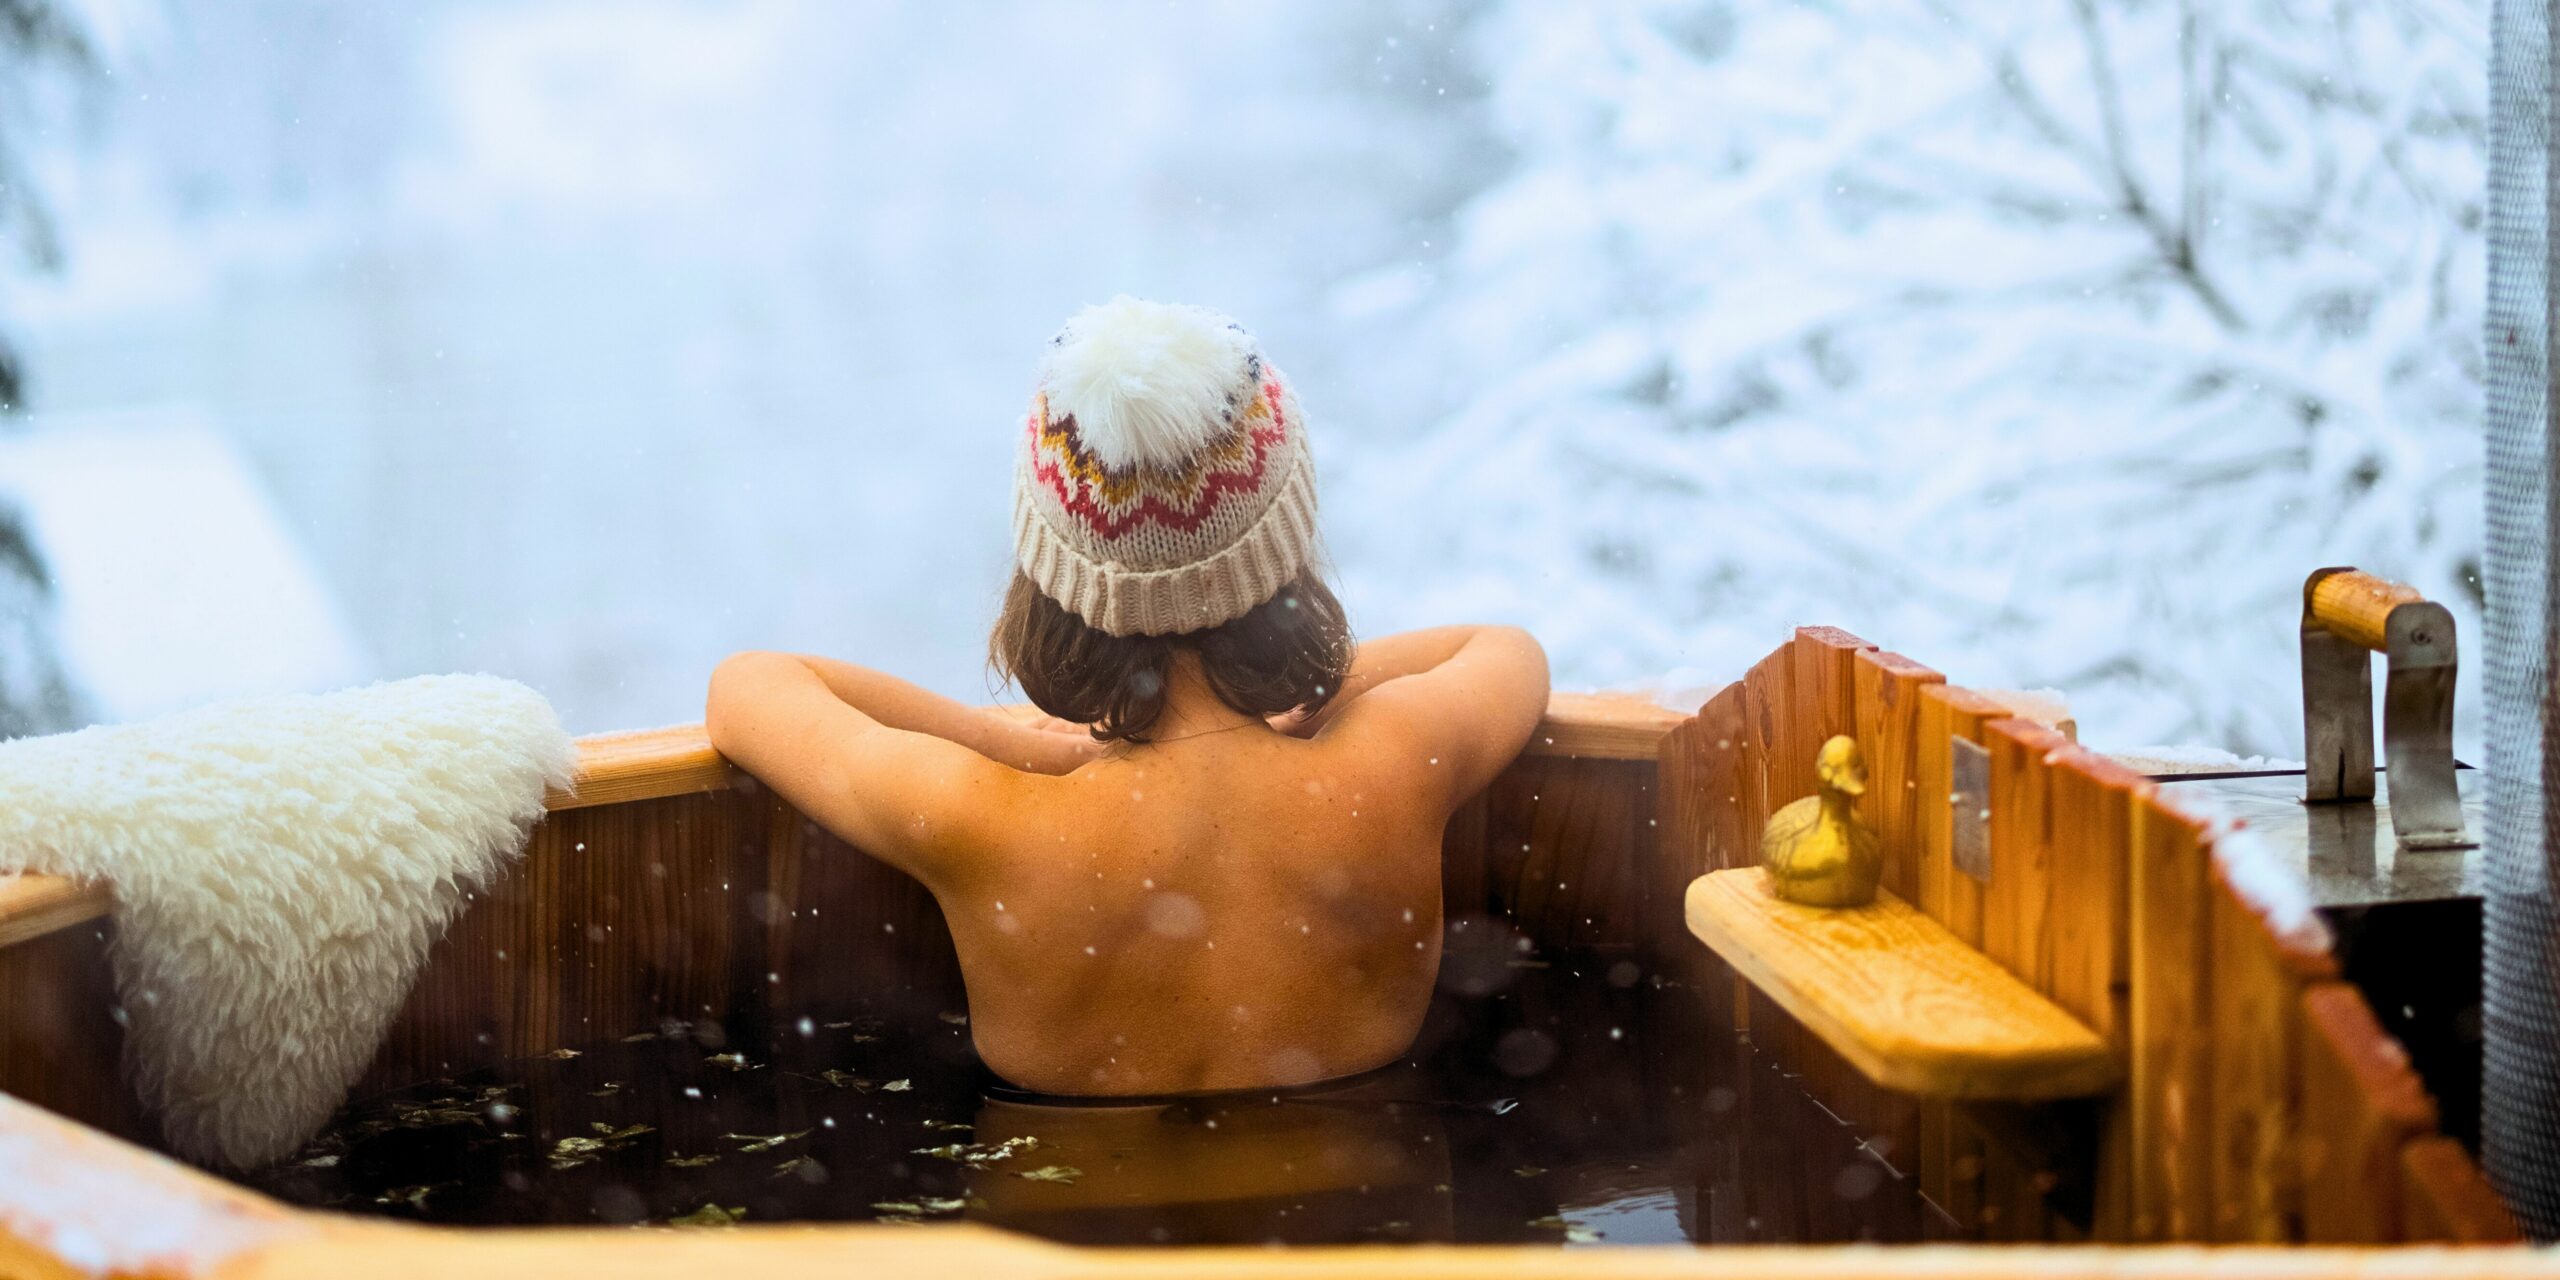 Le SPA de Megève avec hammam, sauna et bains extérieurs face au Mont Blanc